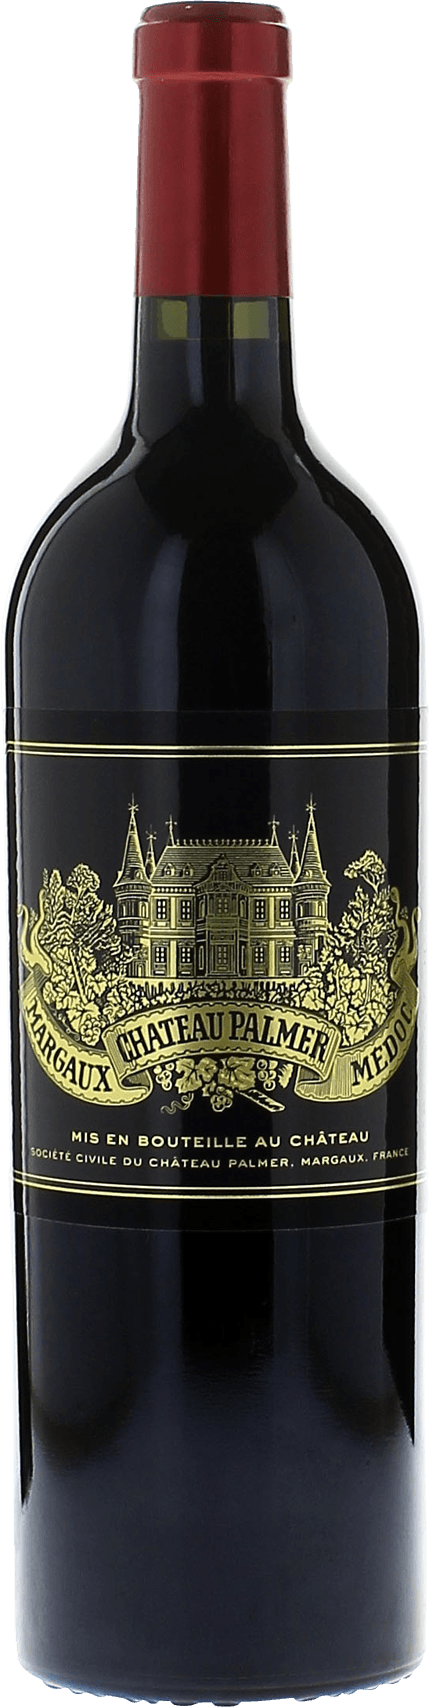 Palmer 1988 3me Grand cru class Margaux, Bordeaux rouge